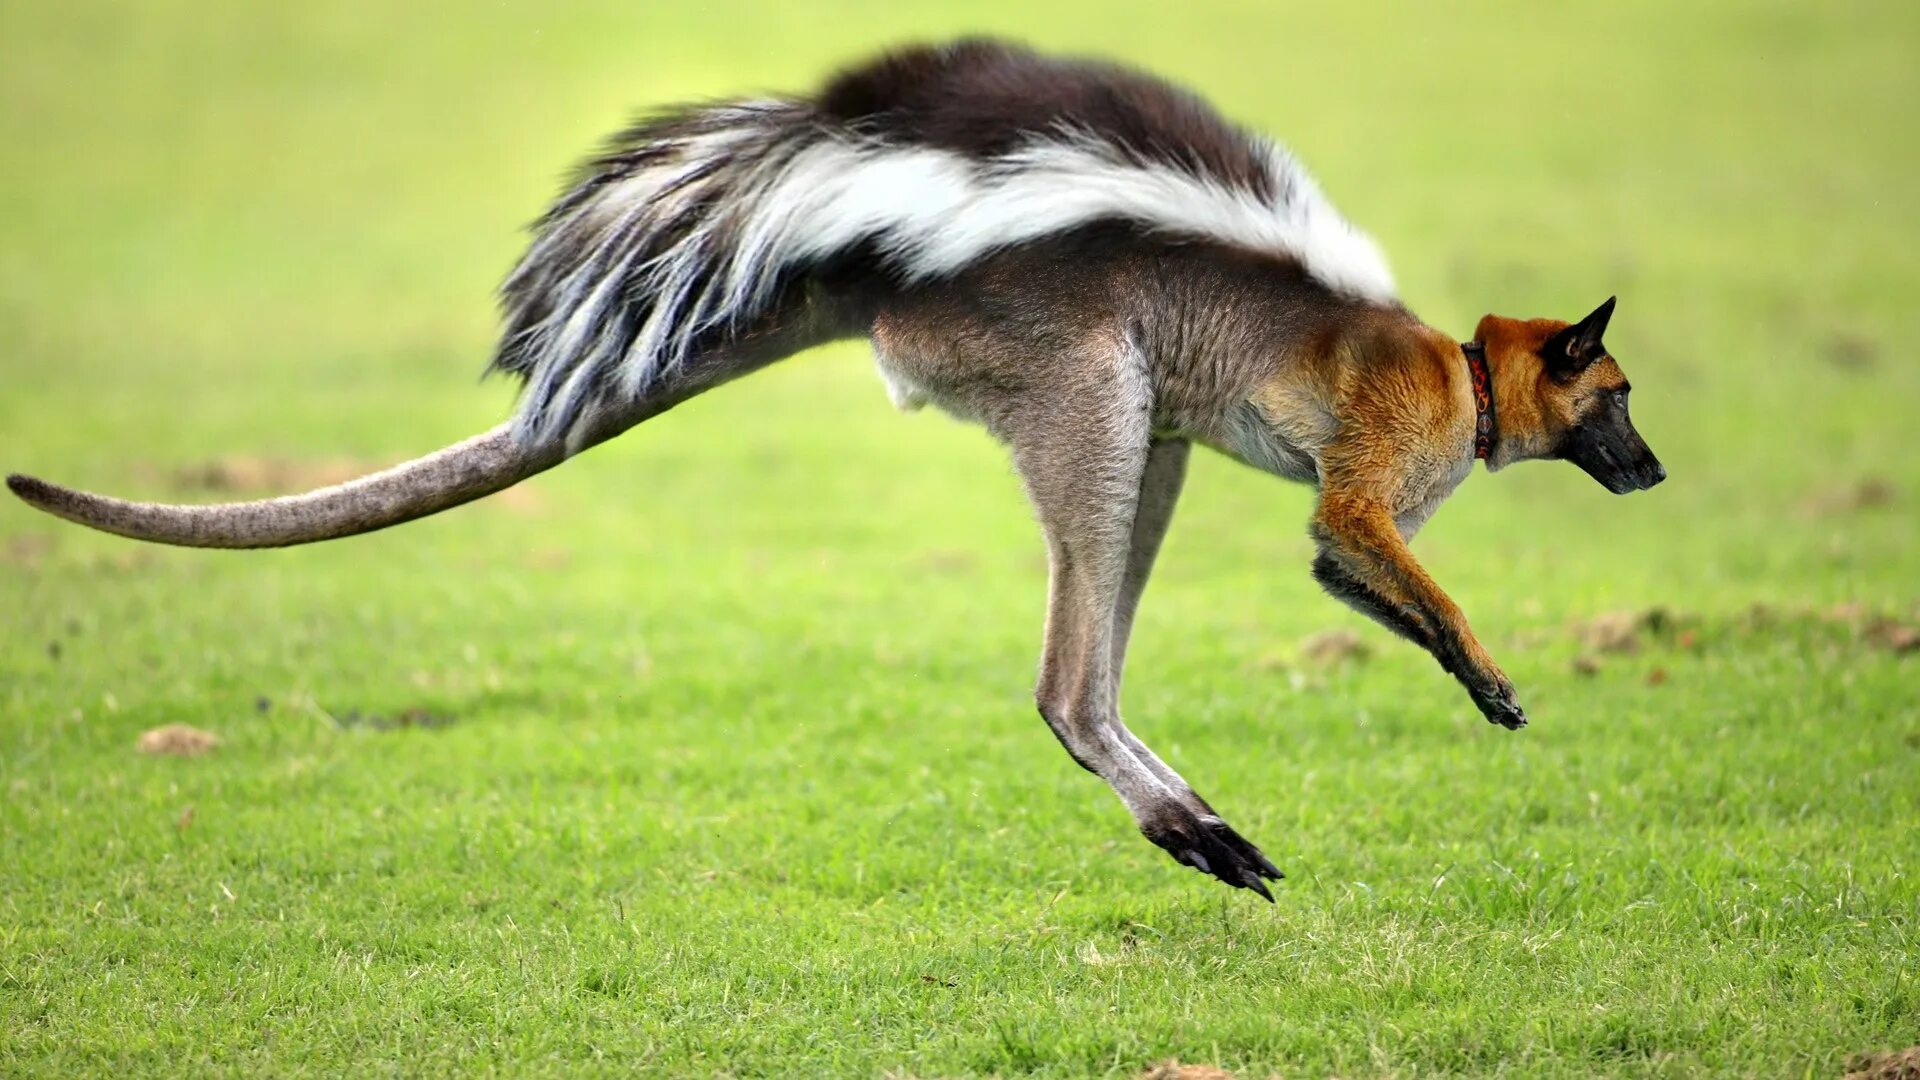 Питание гибрида. Скорость кенгуру. Летающий кенгуру. Гибрид кенгуру. Кенгуру с крыльями.